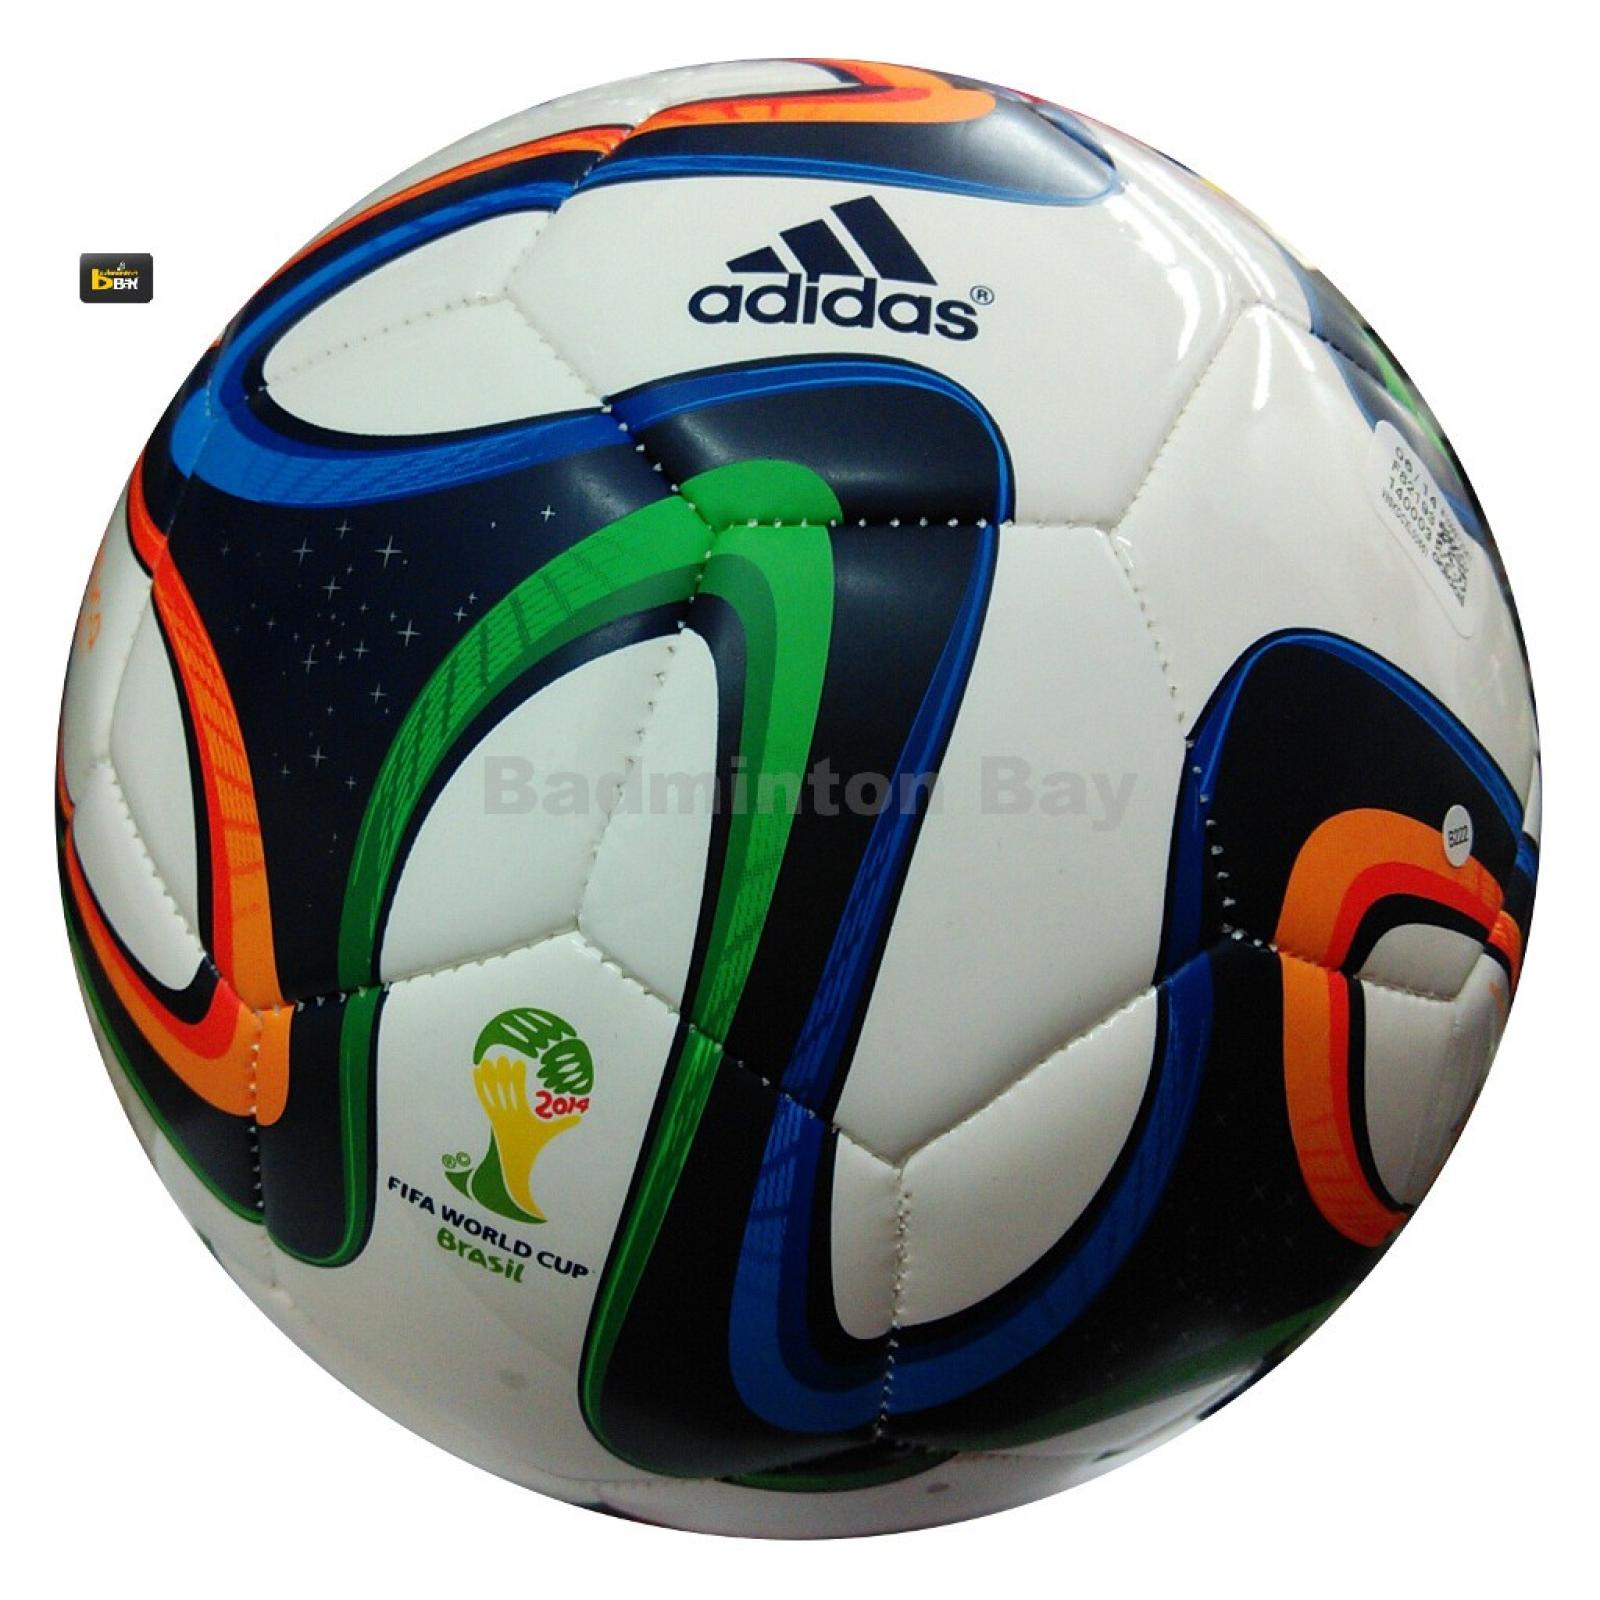 brazuca replica ball